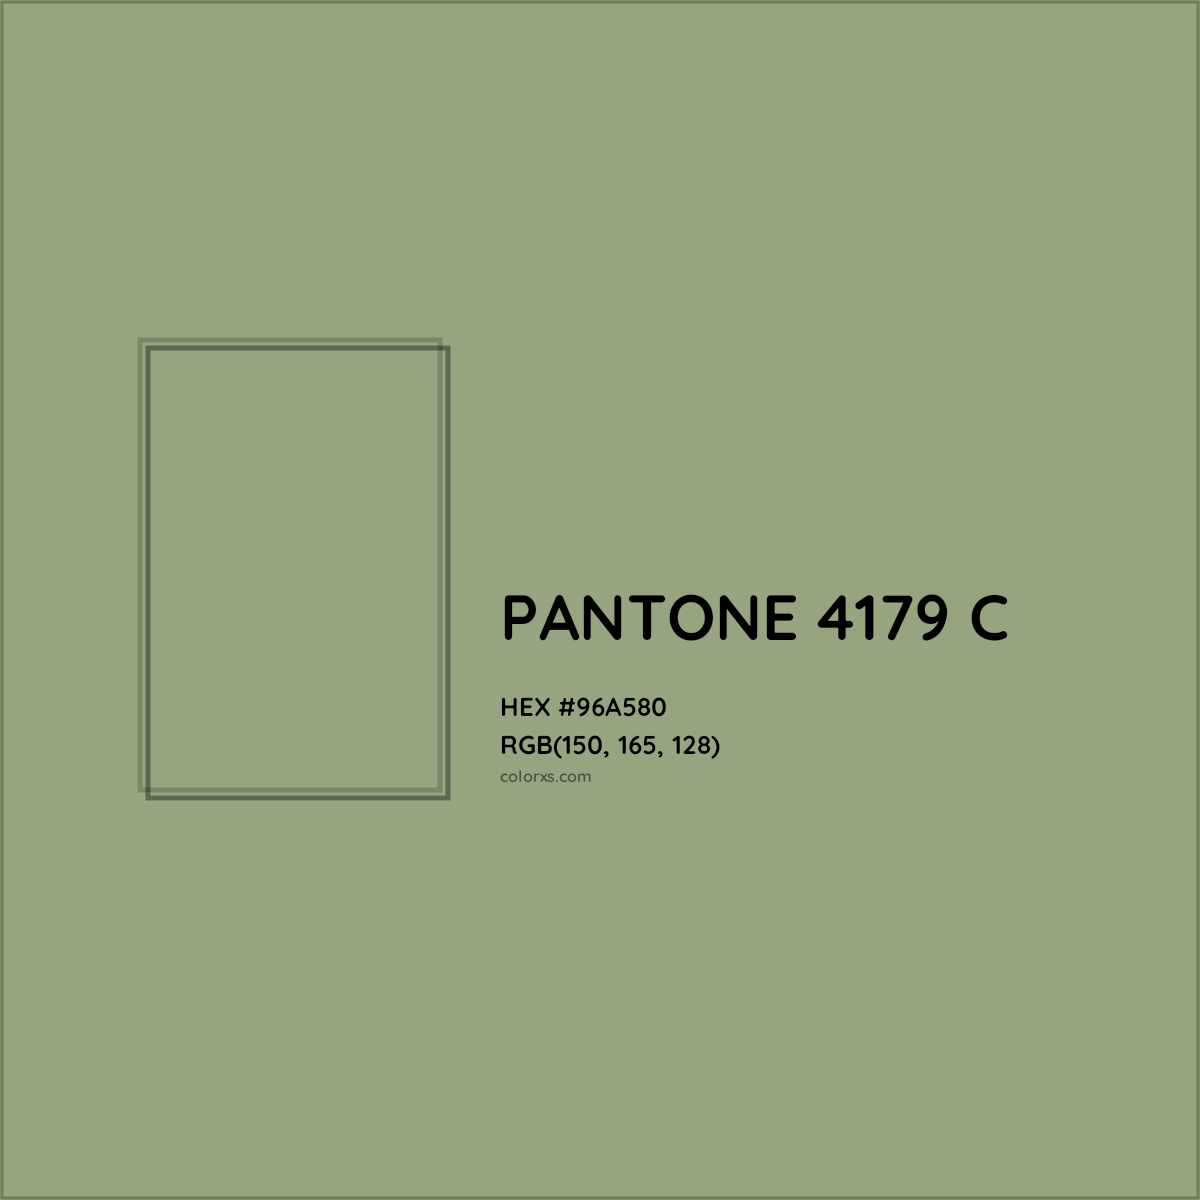 HEX #96A580 PANTONE 4179 C CMS Pantone PMS - Color Code